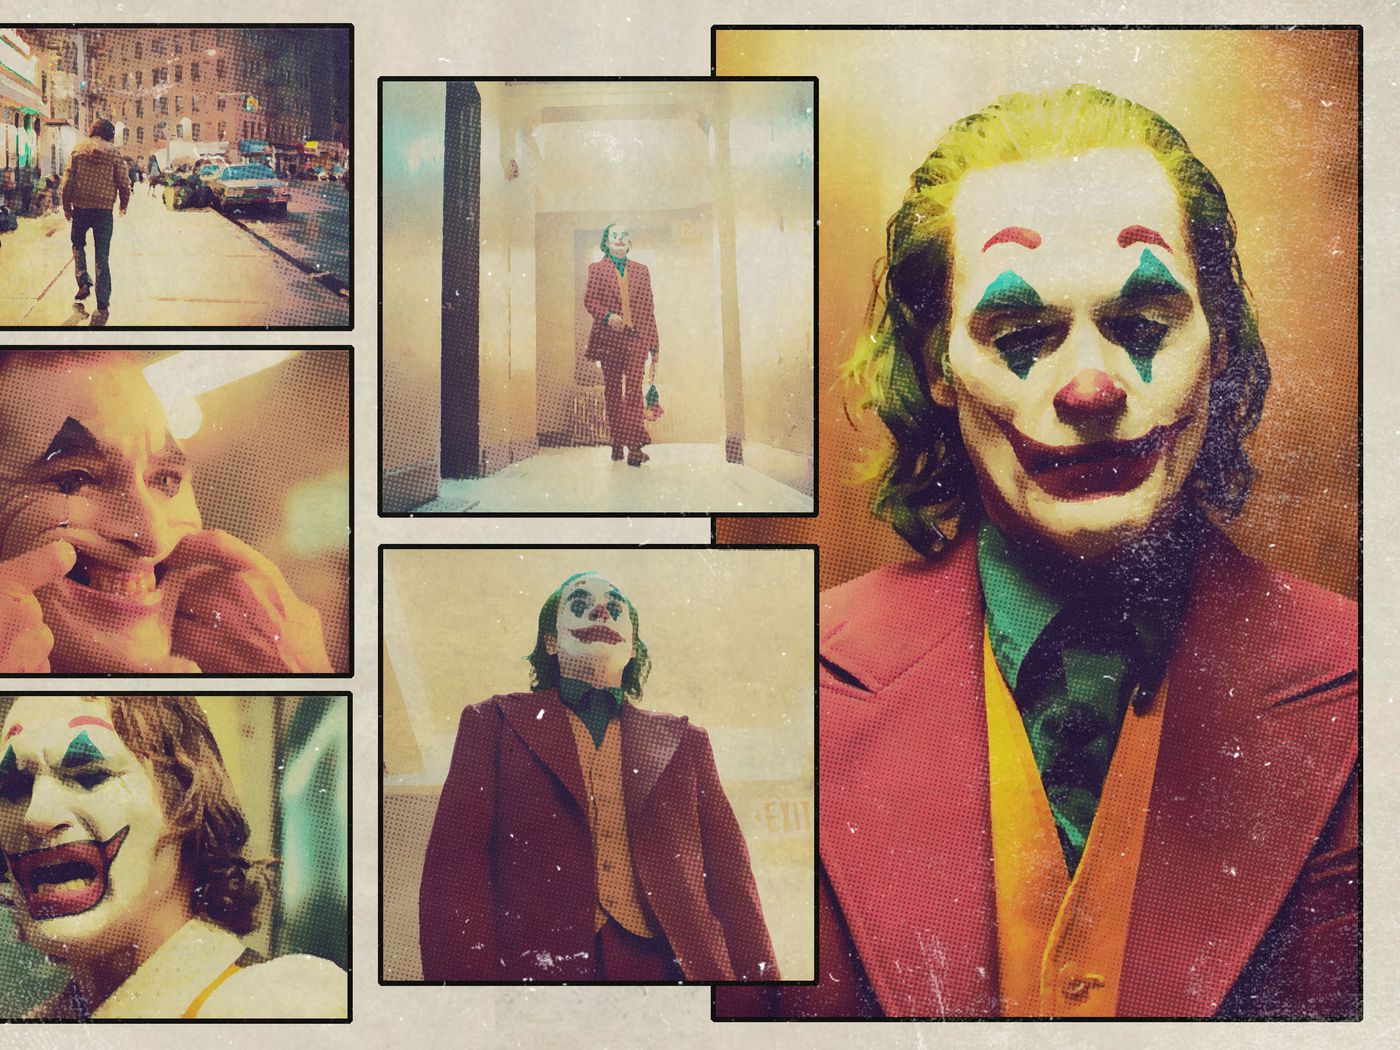 The Joker Trailer Is The Best Of 2019 So Far The Ringer